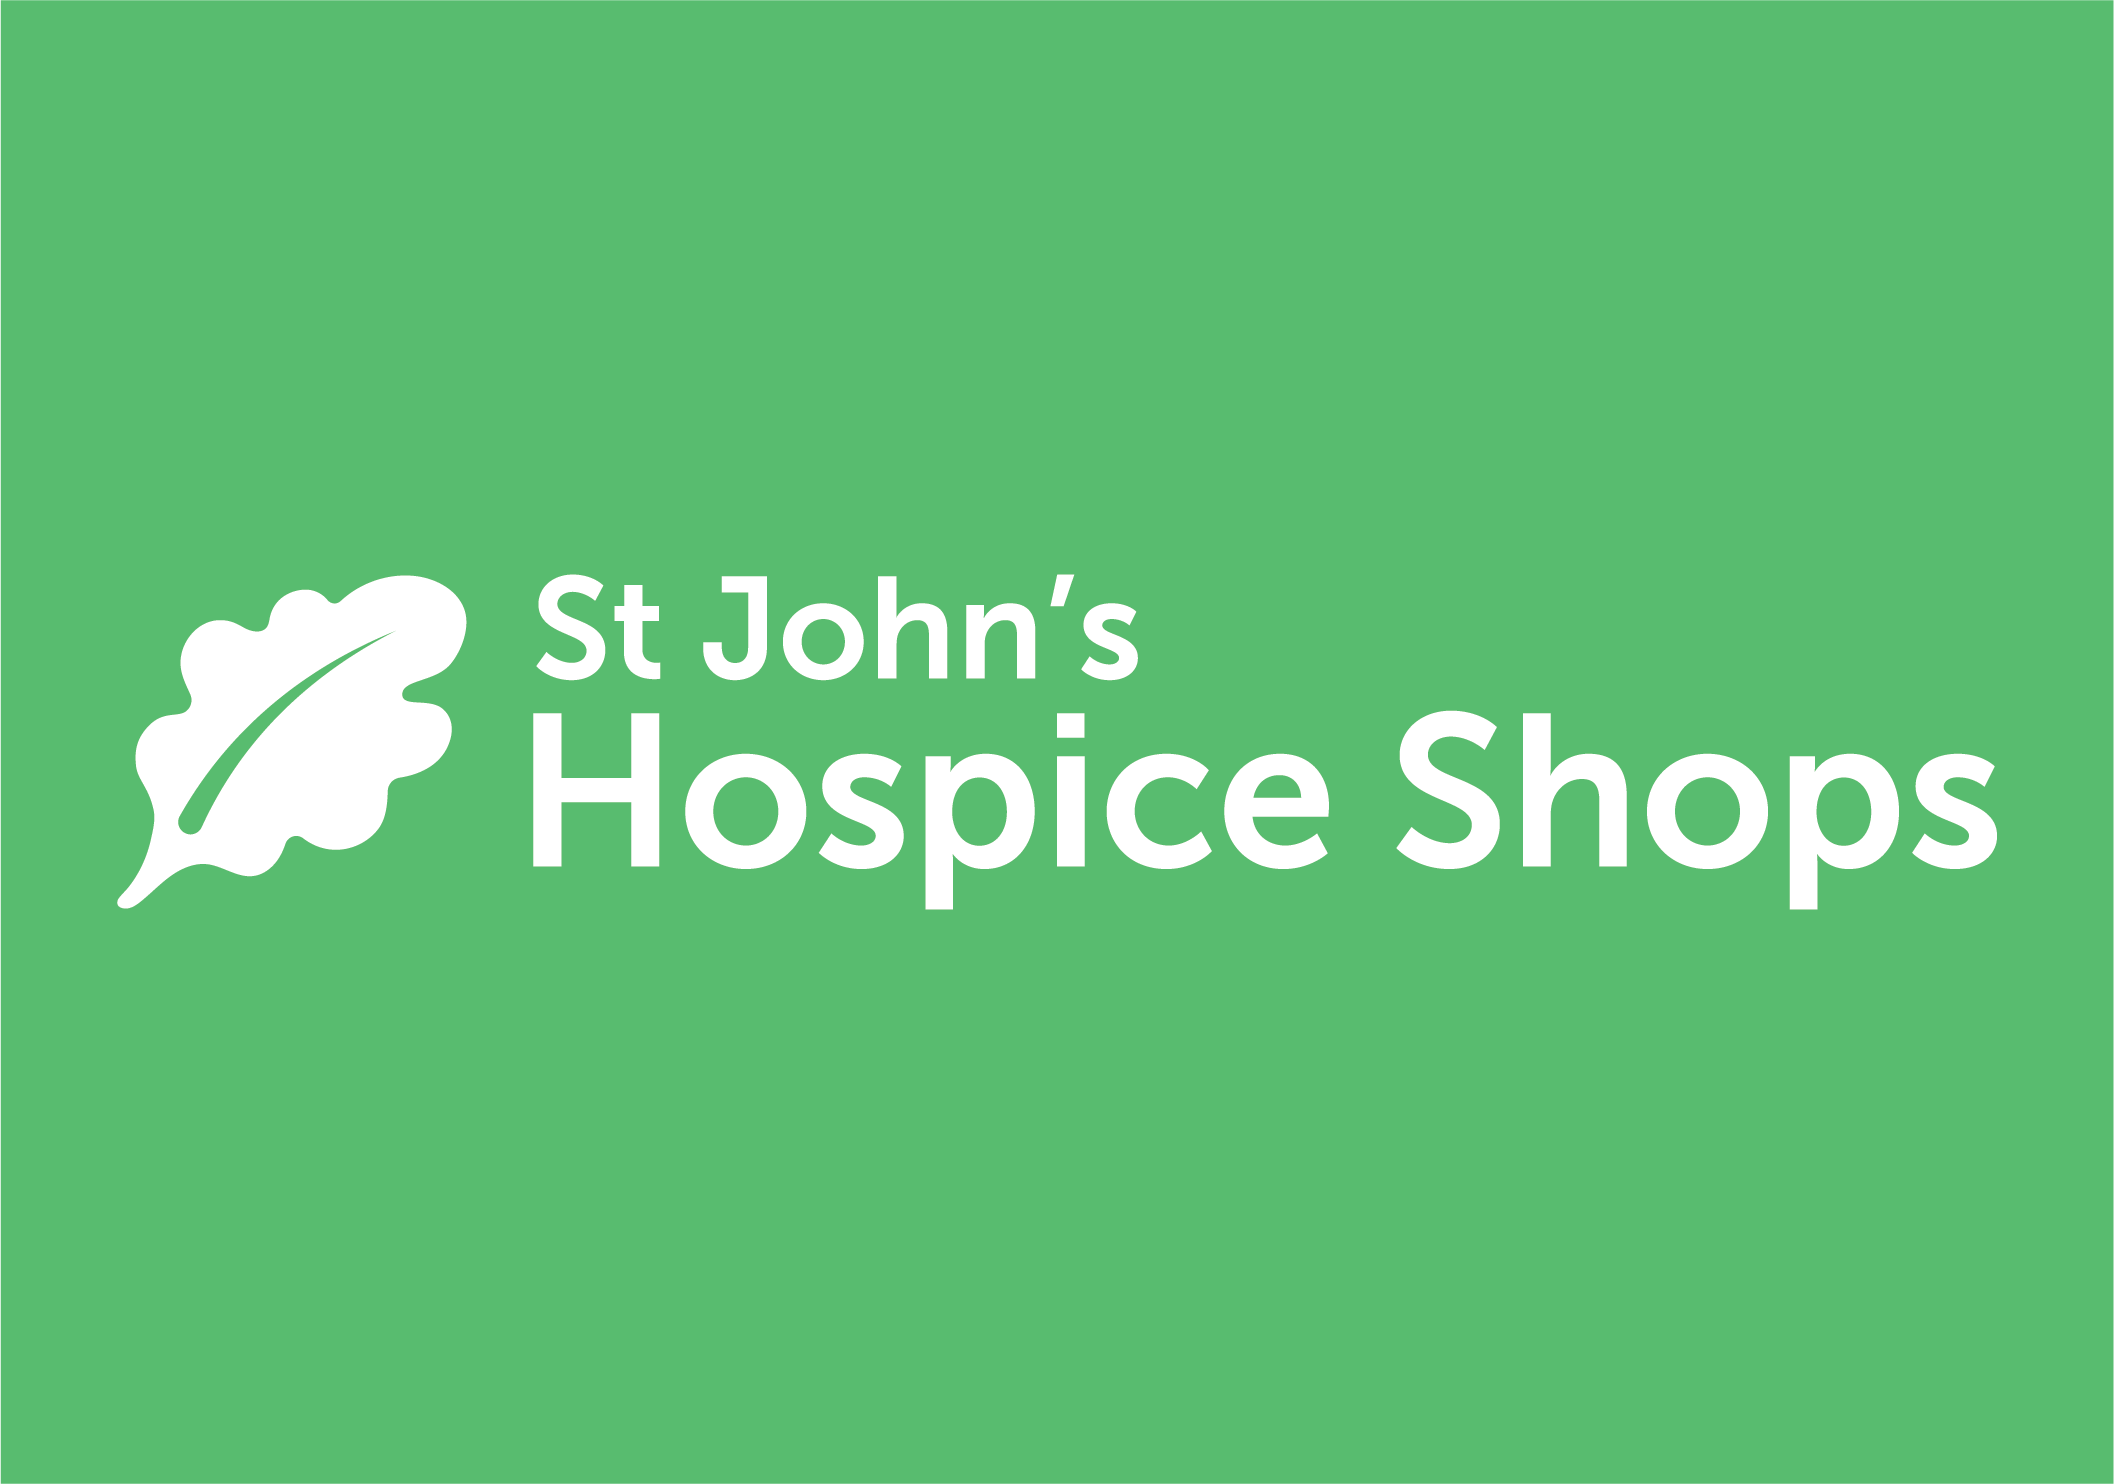 St John’s Hospice